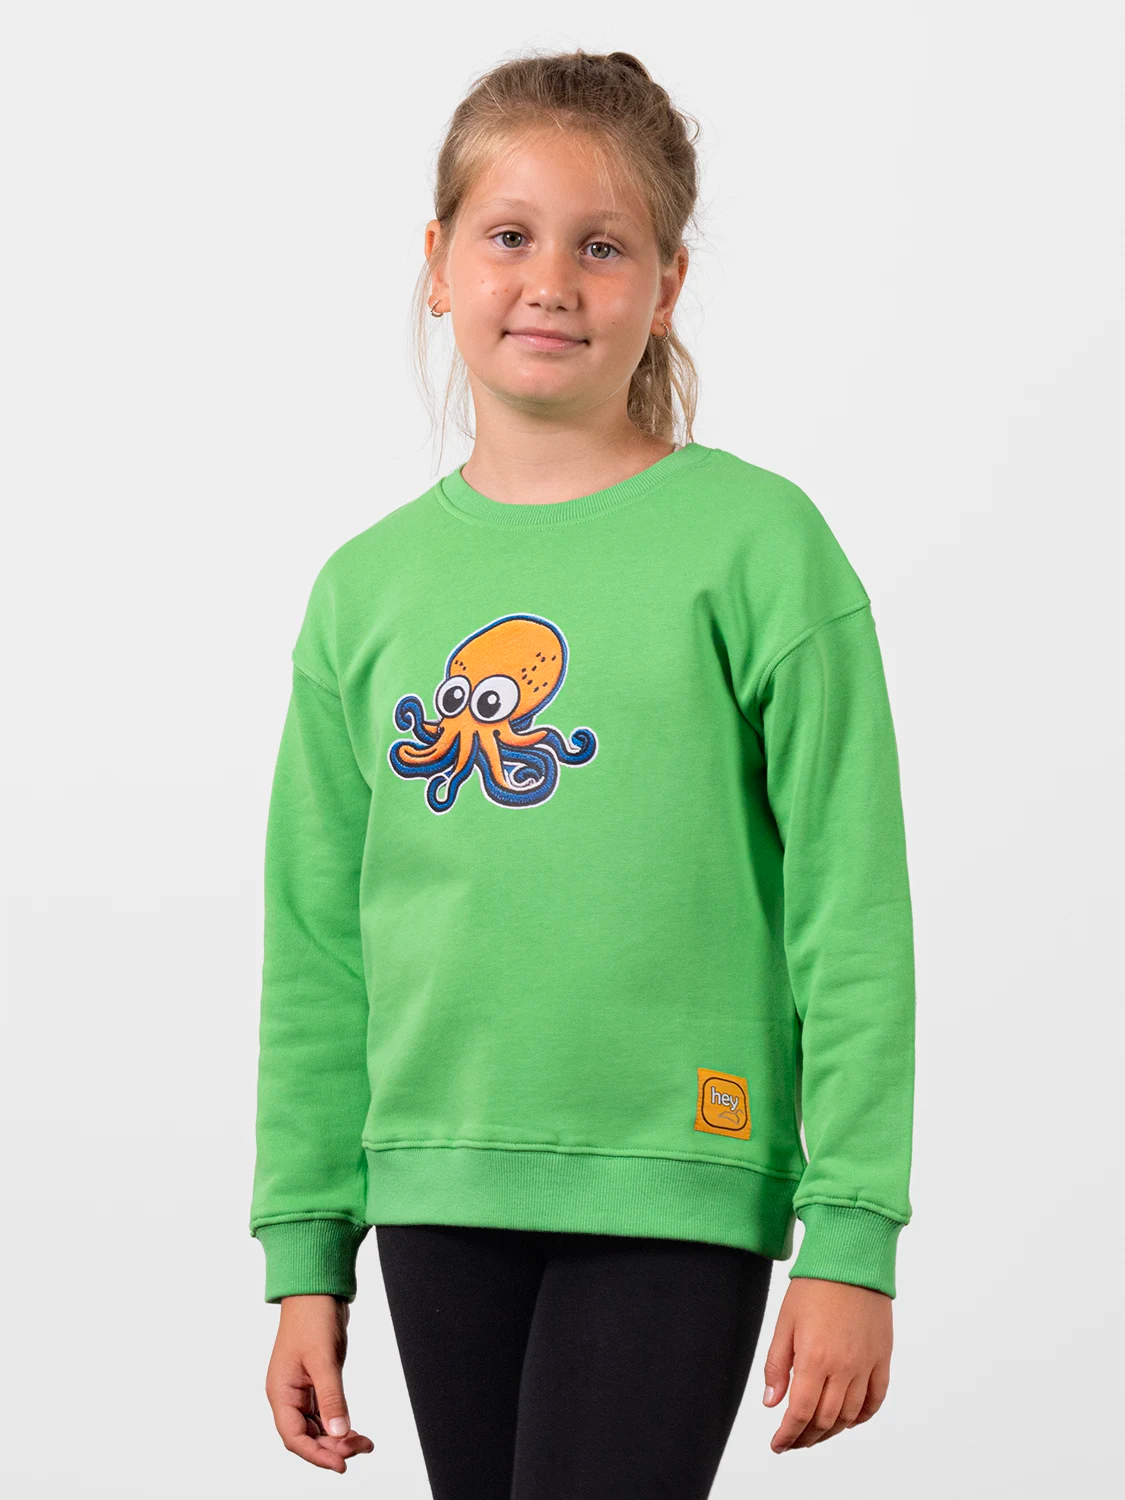 Octopus Perfect Green Sweatshirt